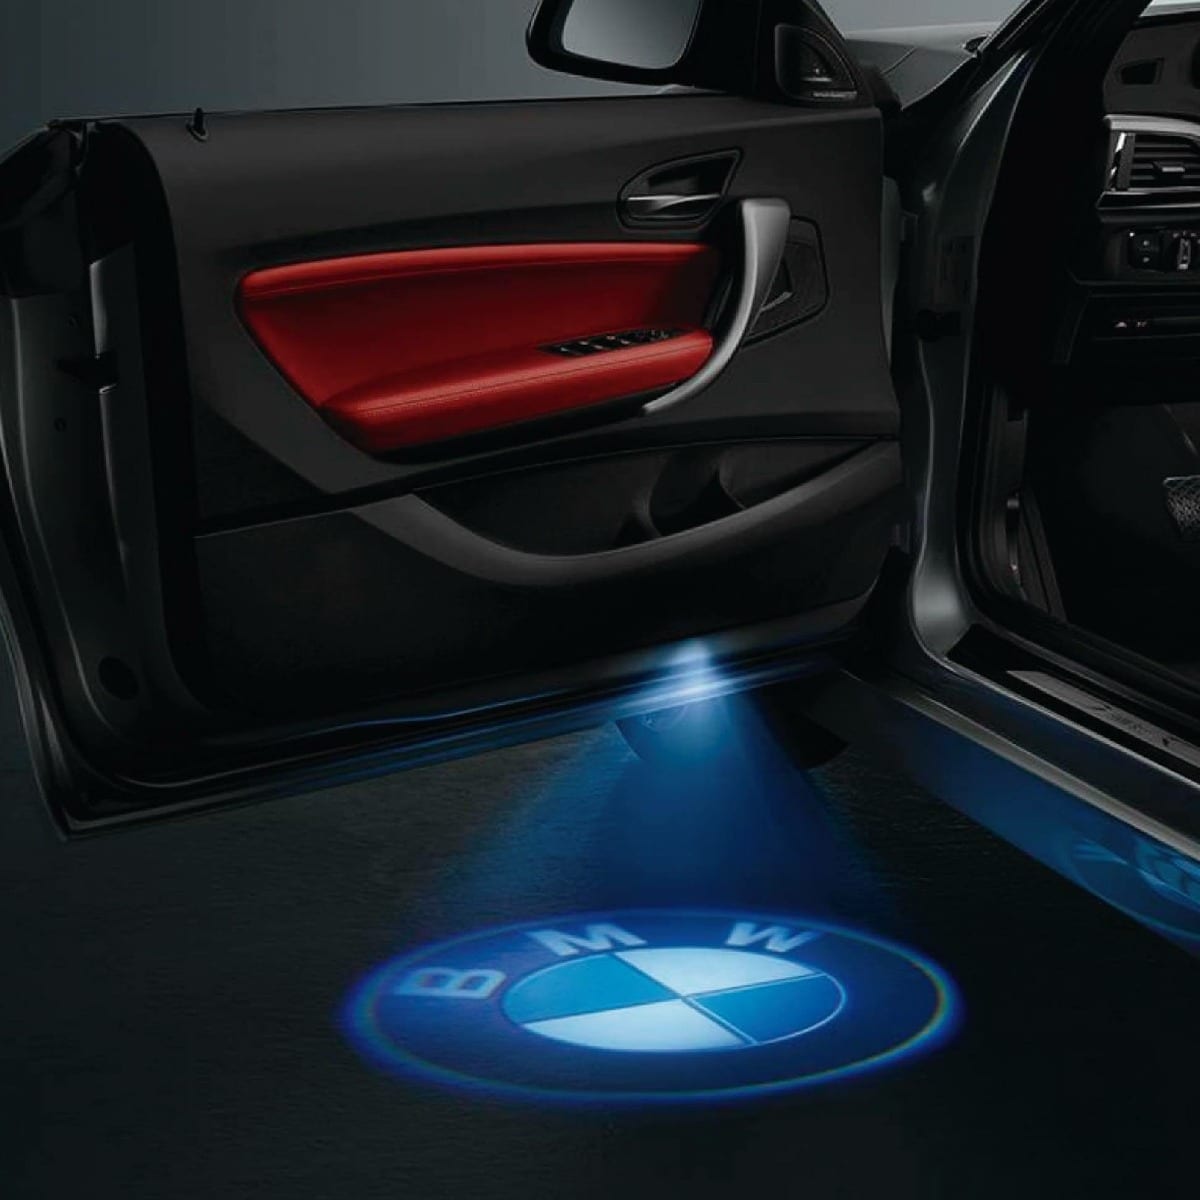 Projektor logo na drzwi samochodu LED LOGO PROJEKTOR BMW 4szt YBD-3C za  69,70 zł z Szczecin -  - (14713702815)